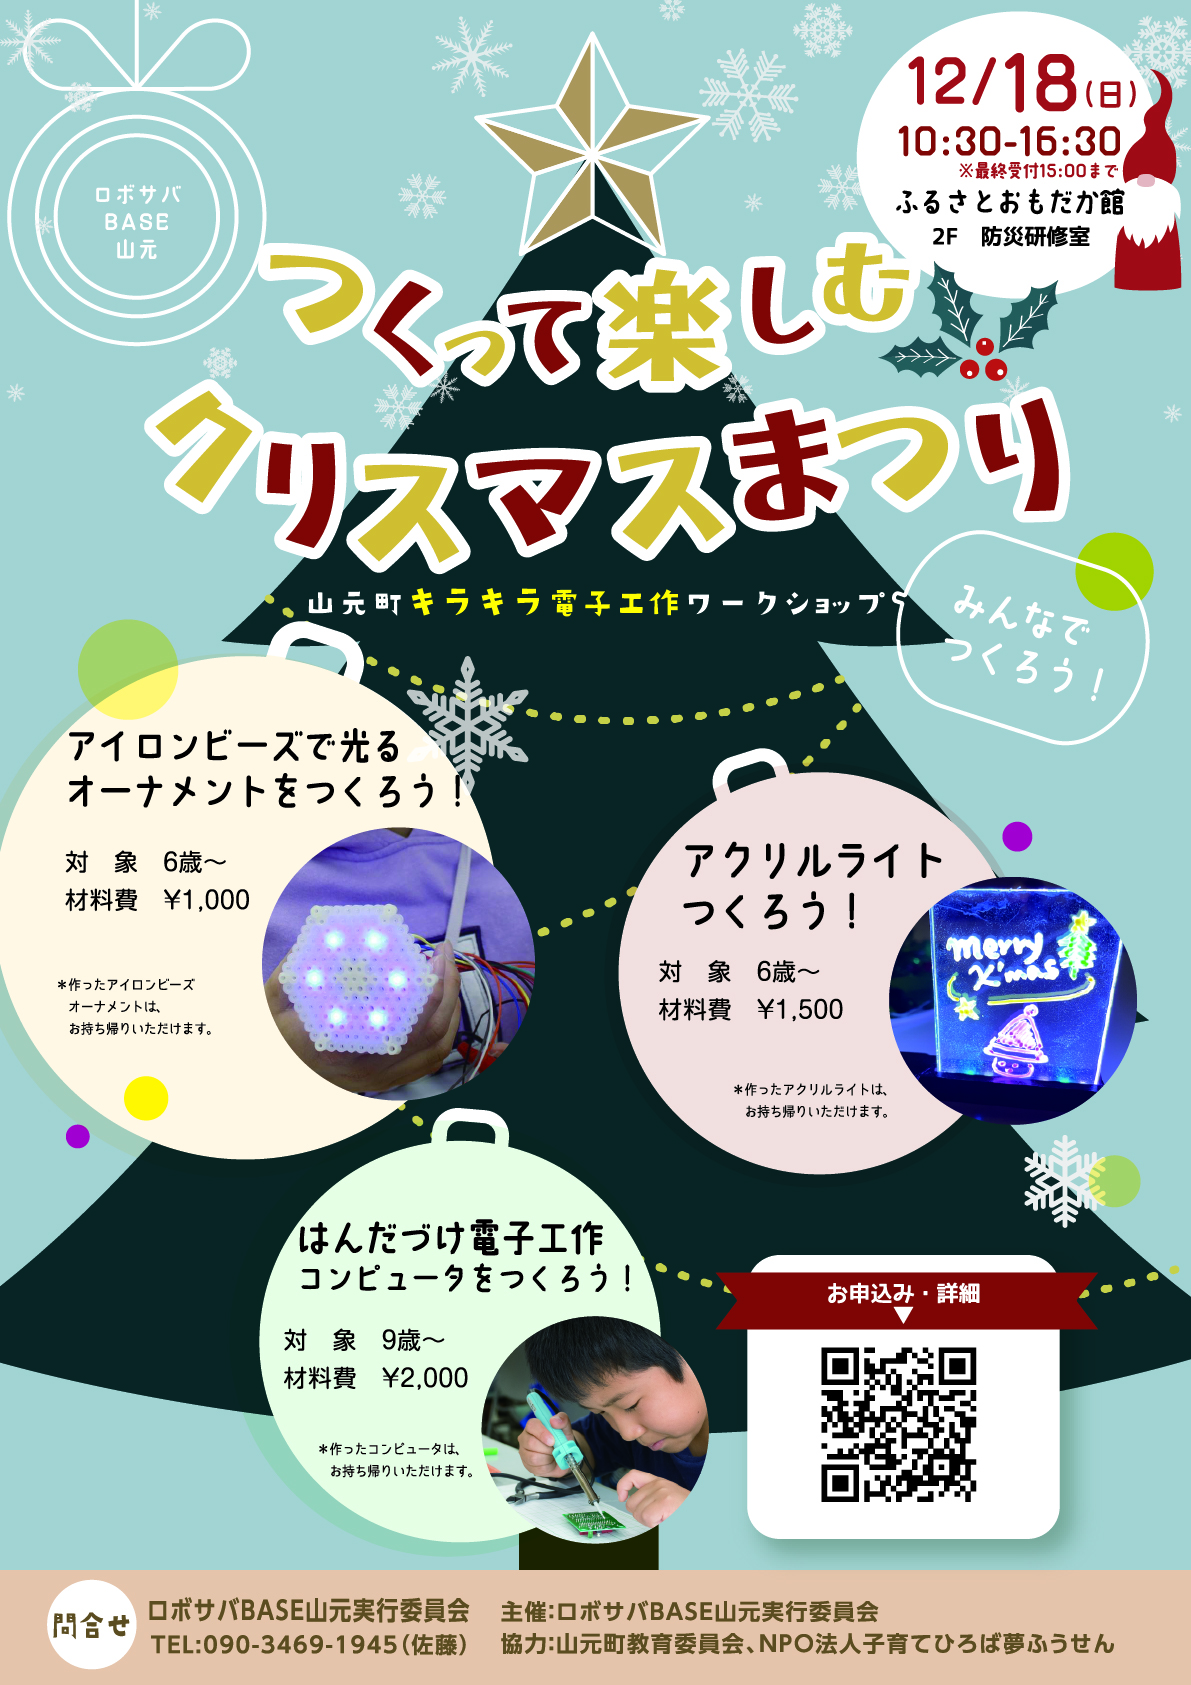 山元町キラキラ電子工作ワークショップ「つくって楽しむクリスマスまつり」